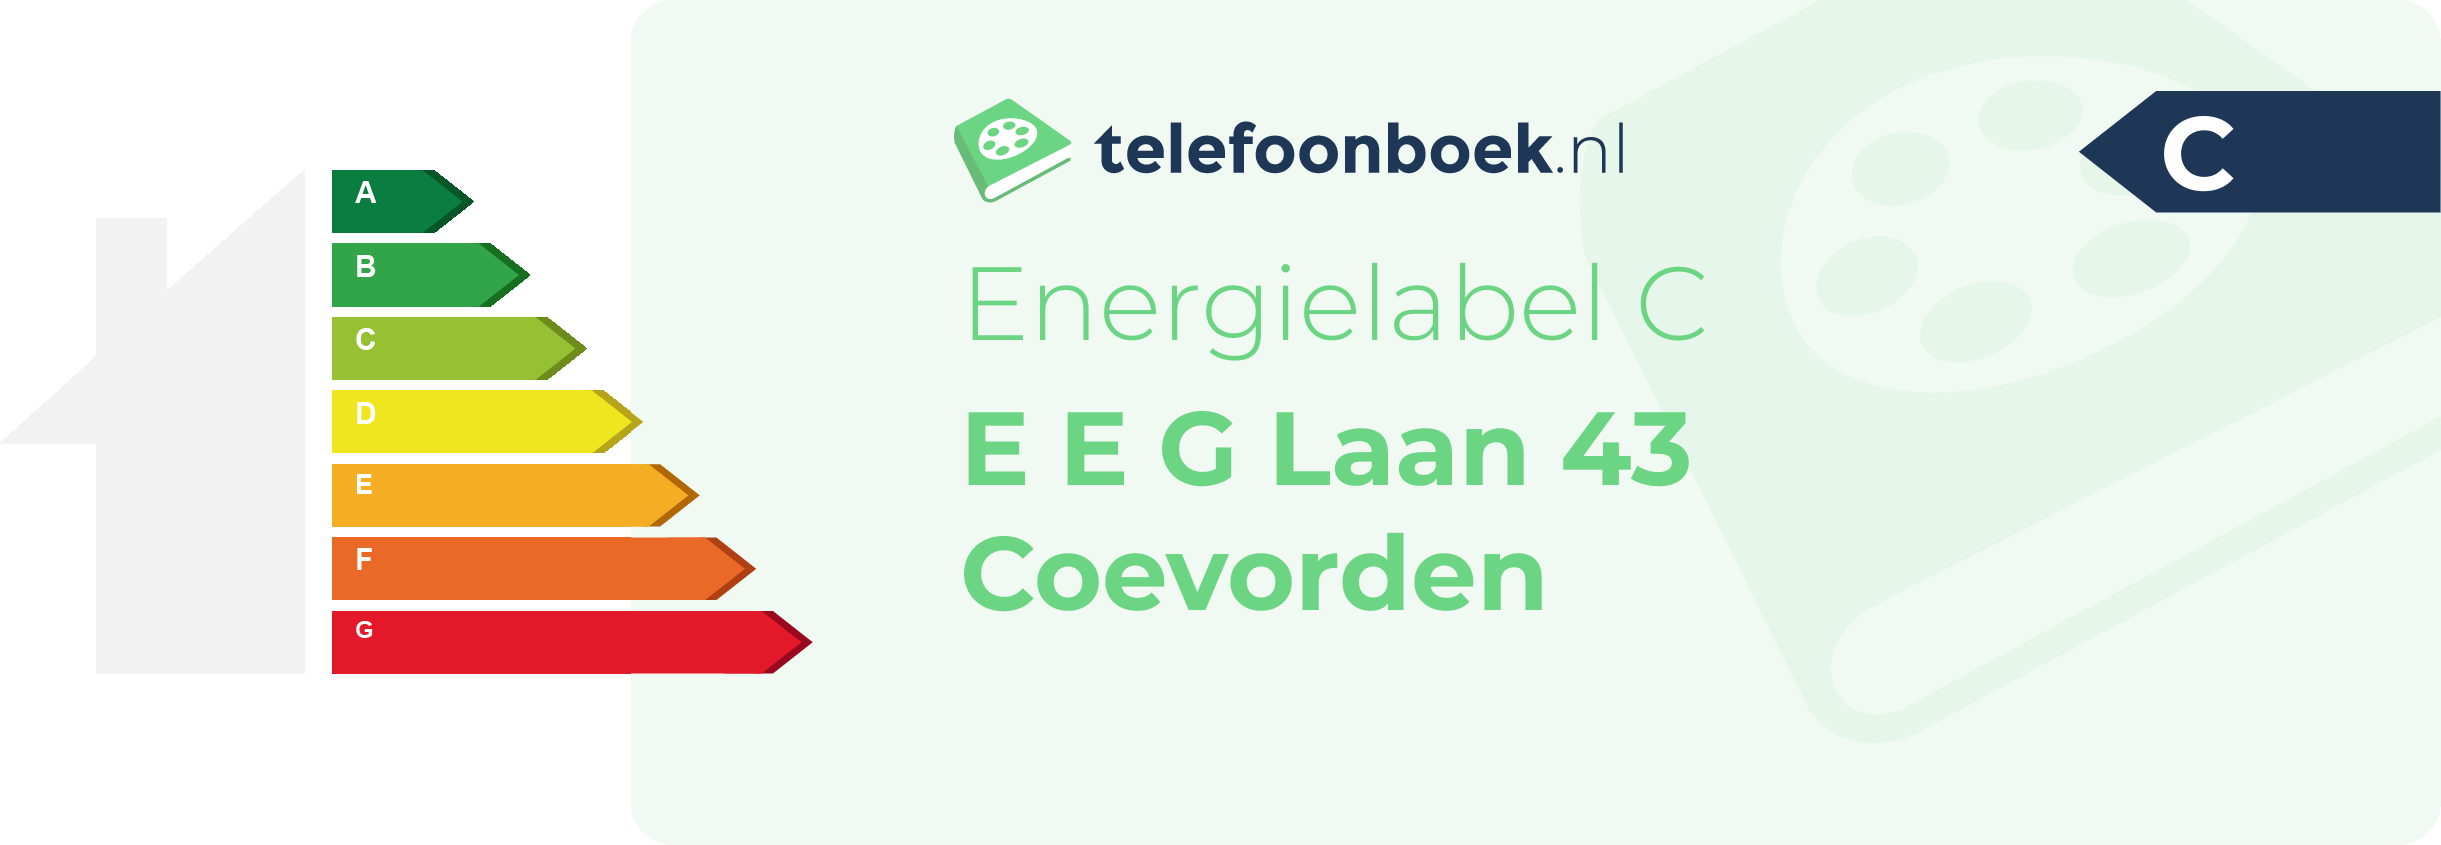 Energielabel E E G Laan 43 Coevorden